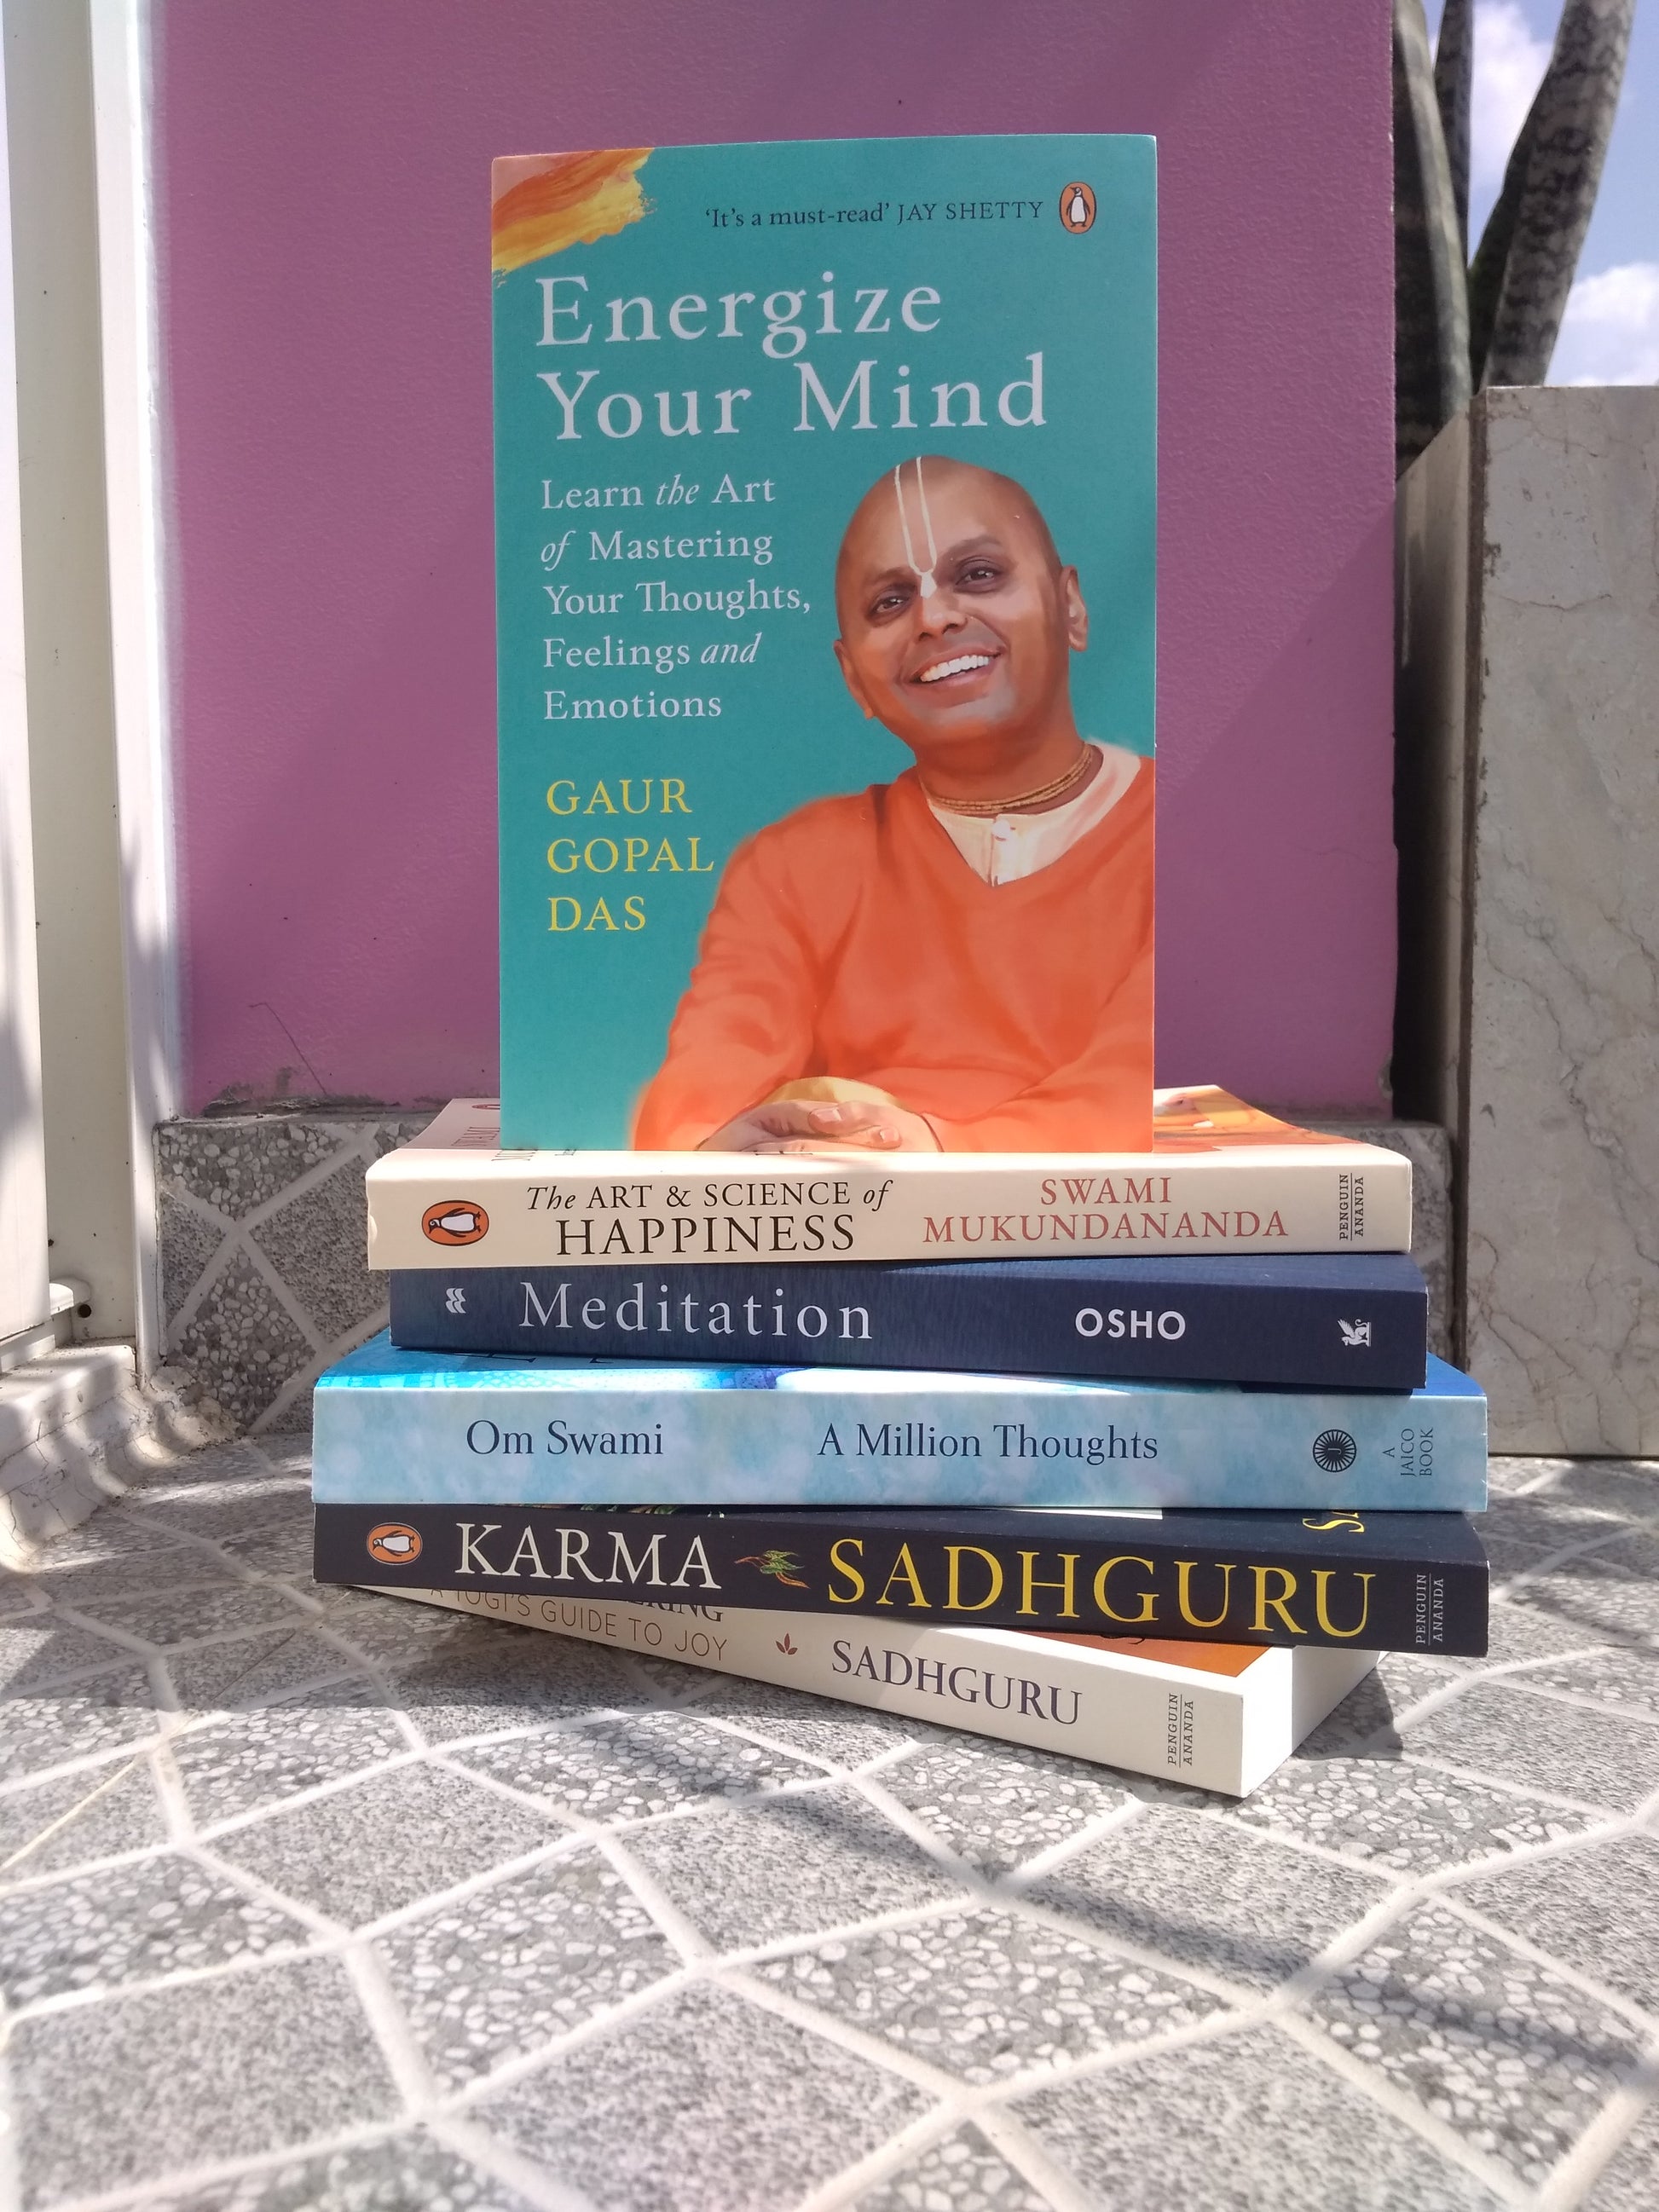 Energize Your Mind by Gaur Gopal Das at BIBLIONEPAL Bookstore